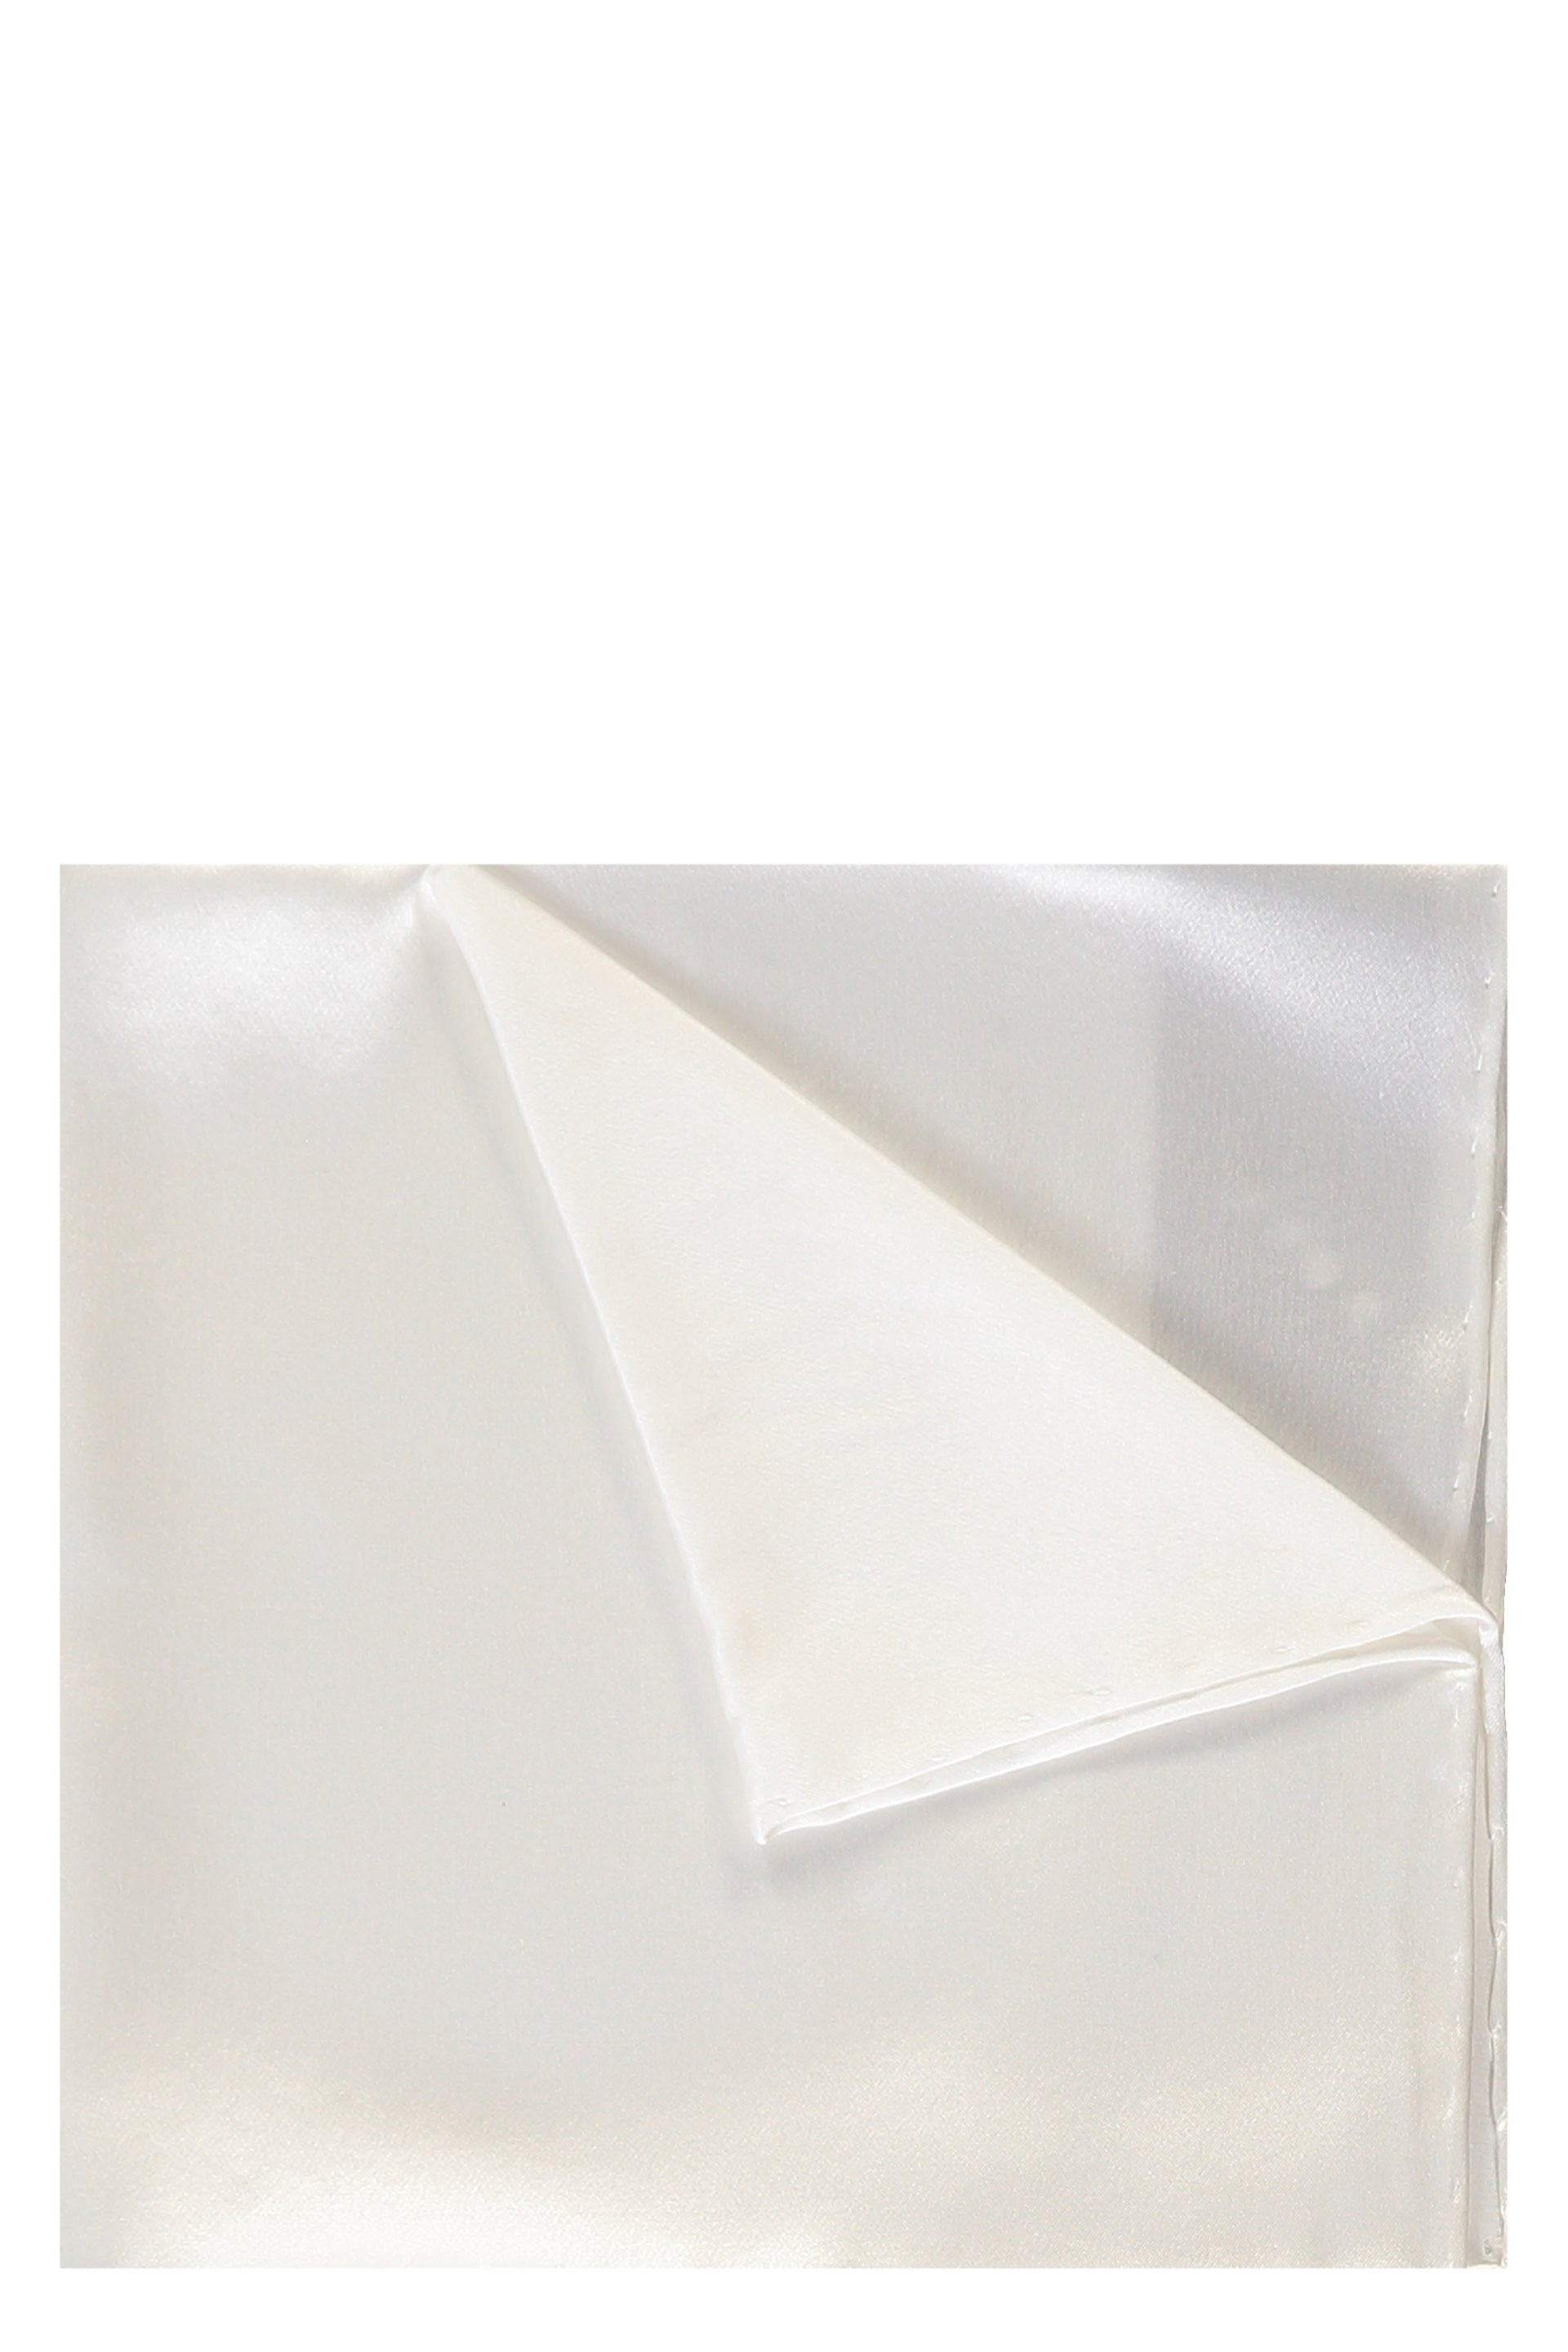 BRIONI-OUTLET-SALE-Hemmed-handkerchief-Accessoires-TU-ARCHIVE-COLLECTION_c2403d91-4357-4aec-ae45-617647ec0617.jpg